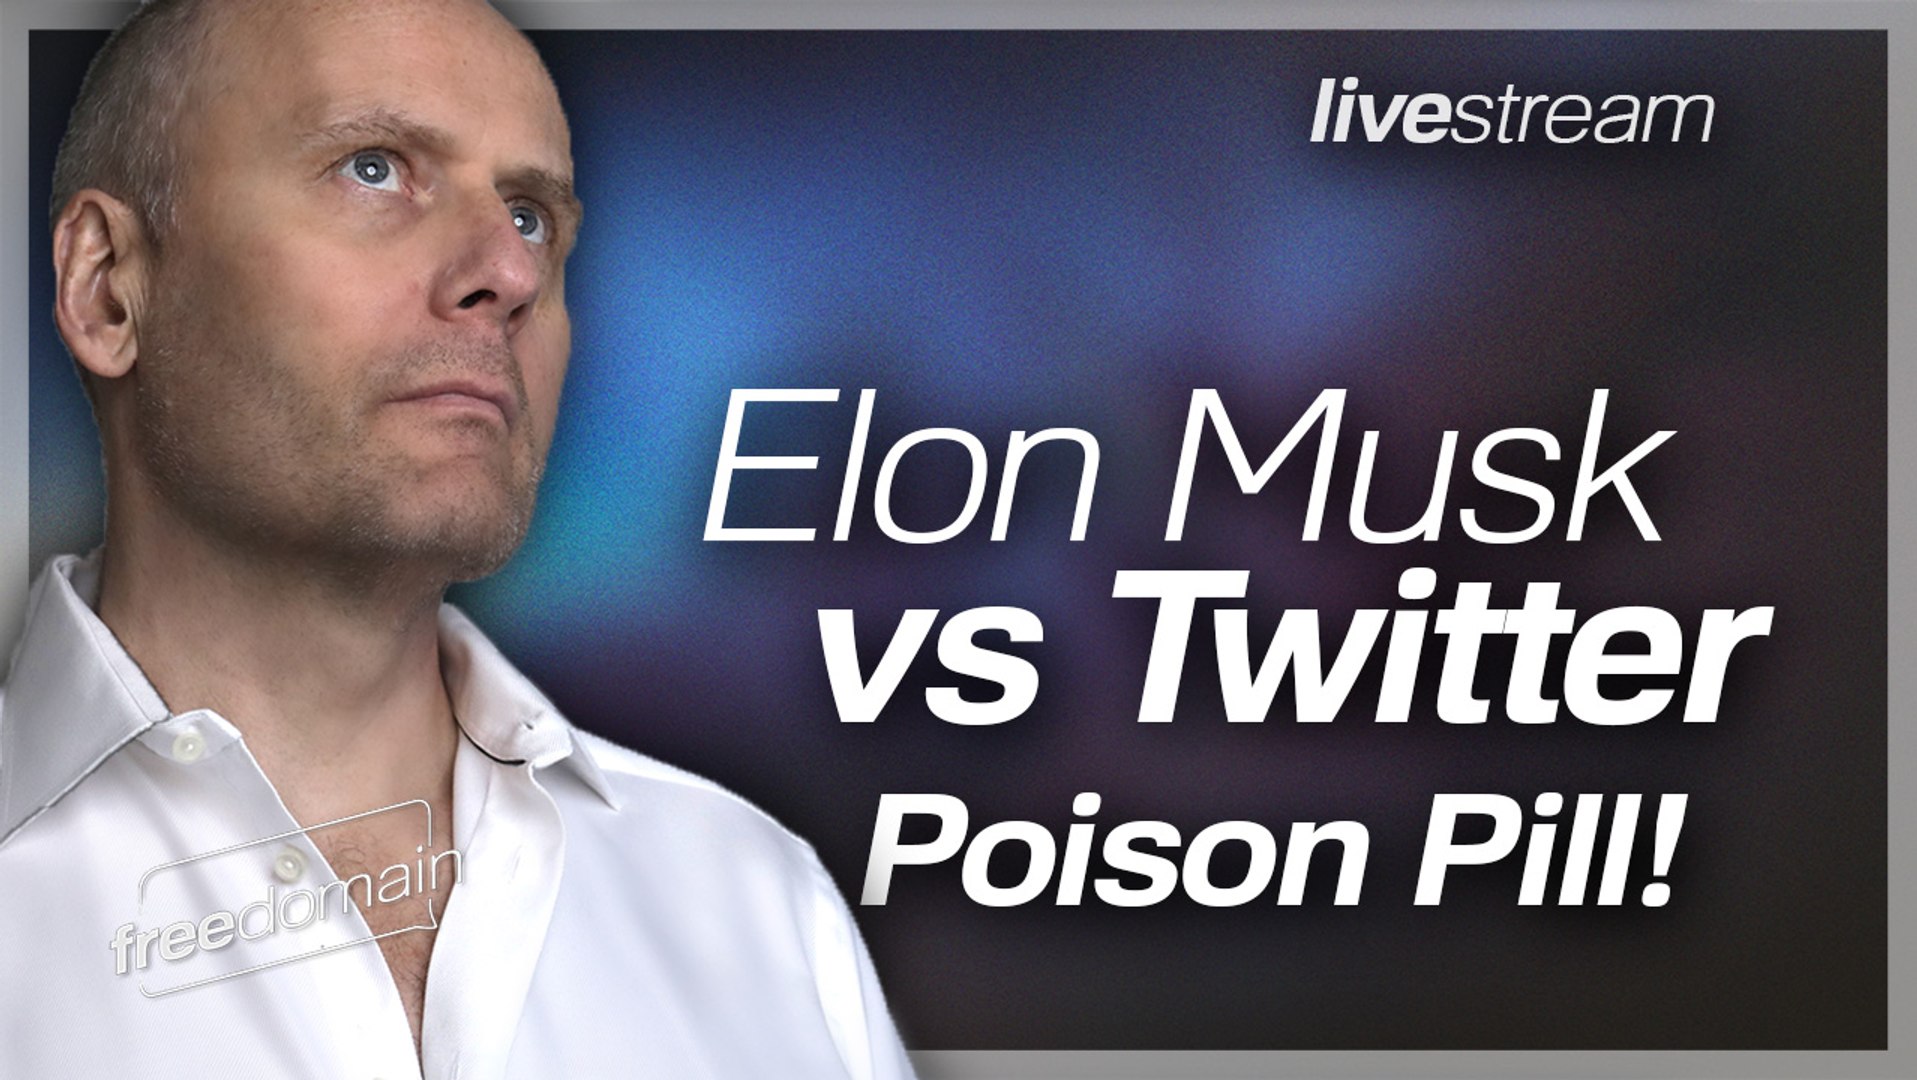 ELON MUSK vs TWITTER POISON PILL!